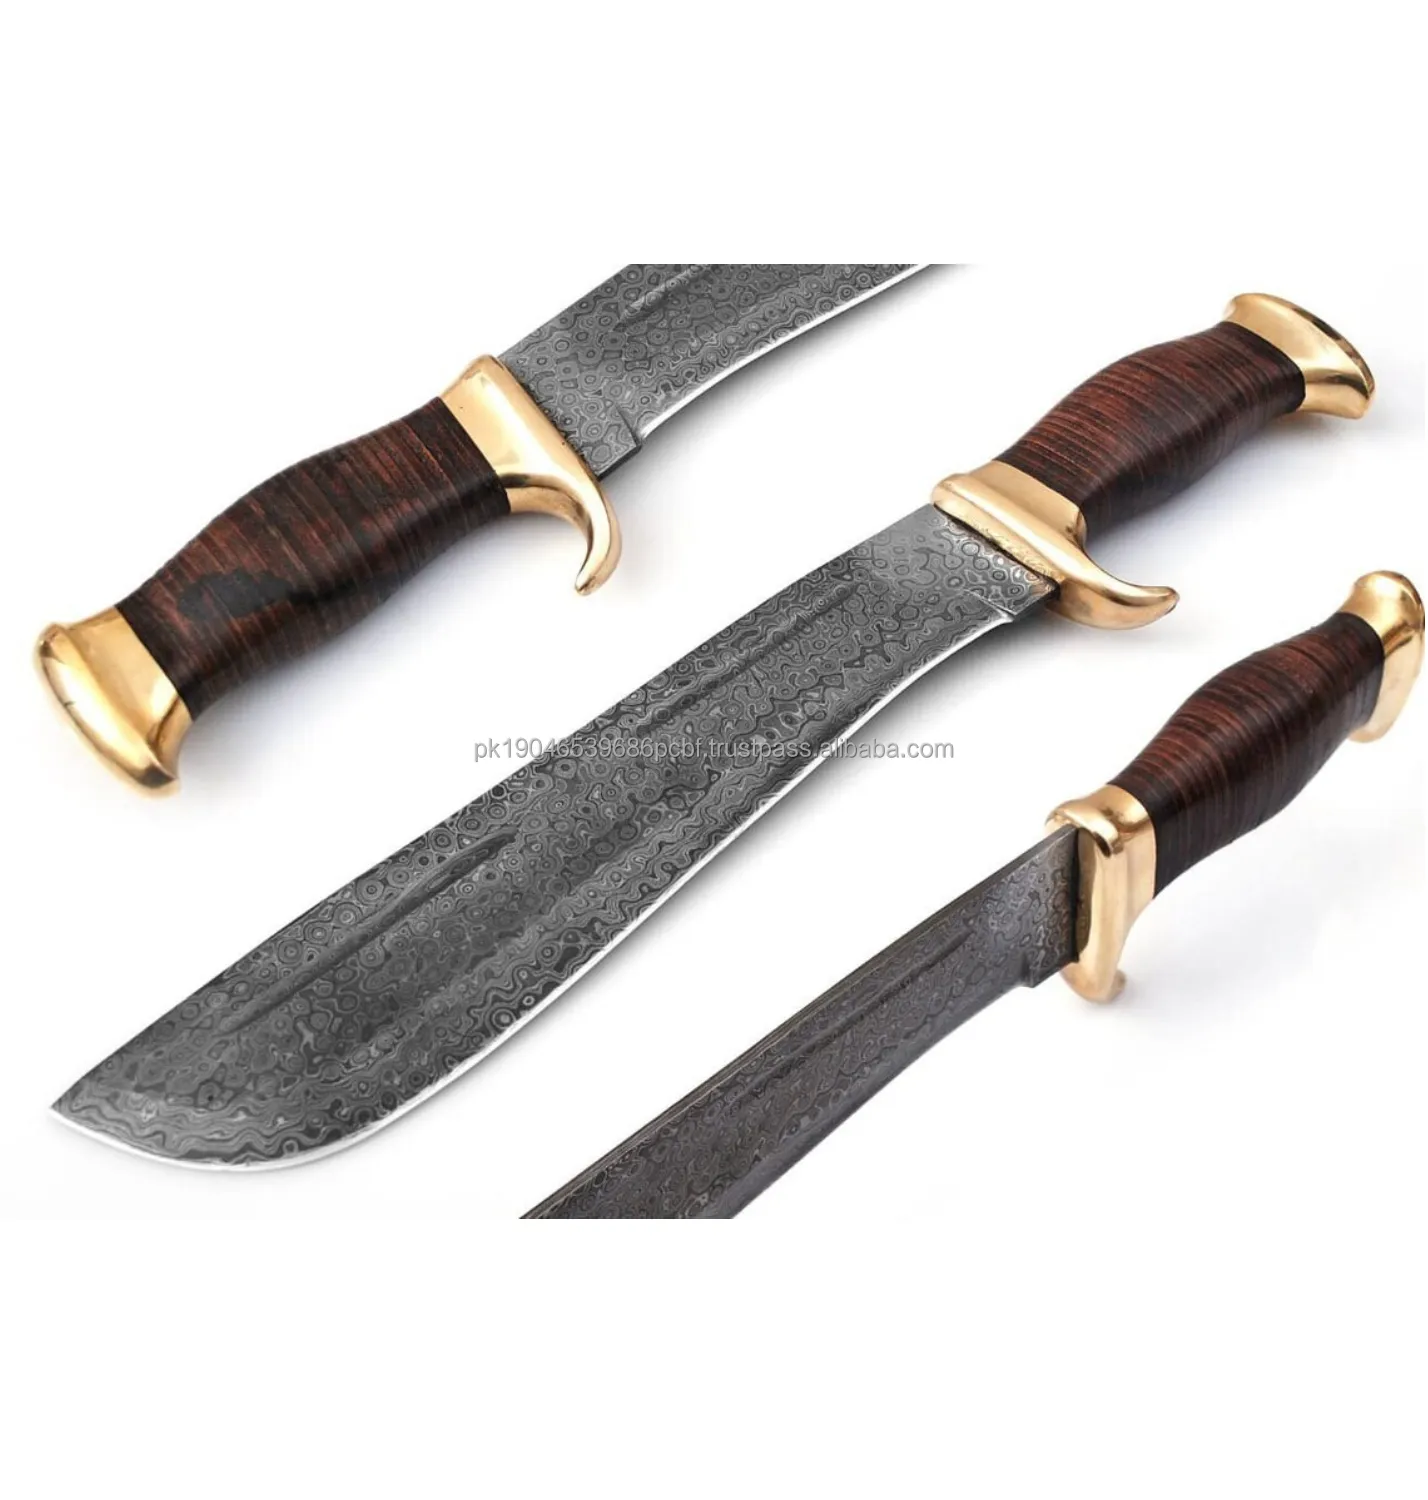 Özel tasarım en popüler sıcak satış avcılık Knife bıçak Damascus 10 şam çelik avcılık bıçaklar deri kılıf ile sabit bıçak